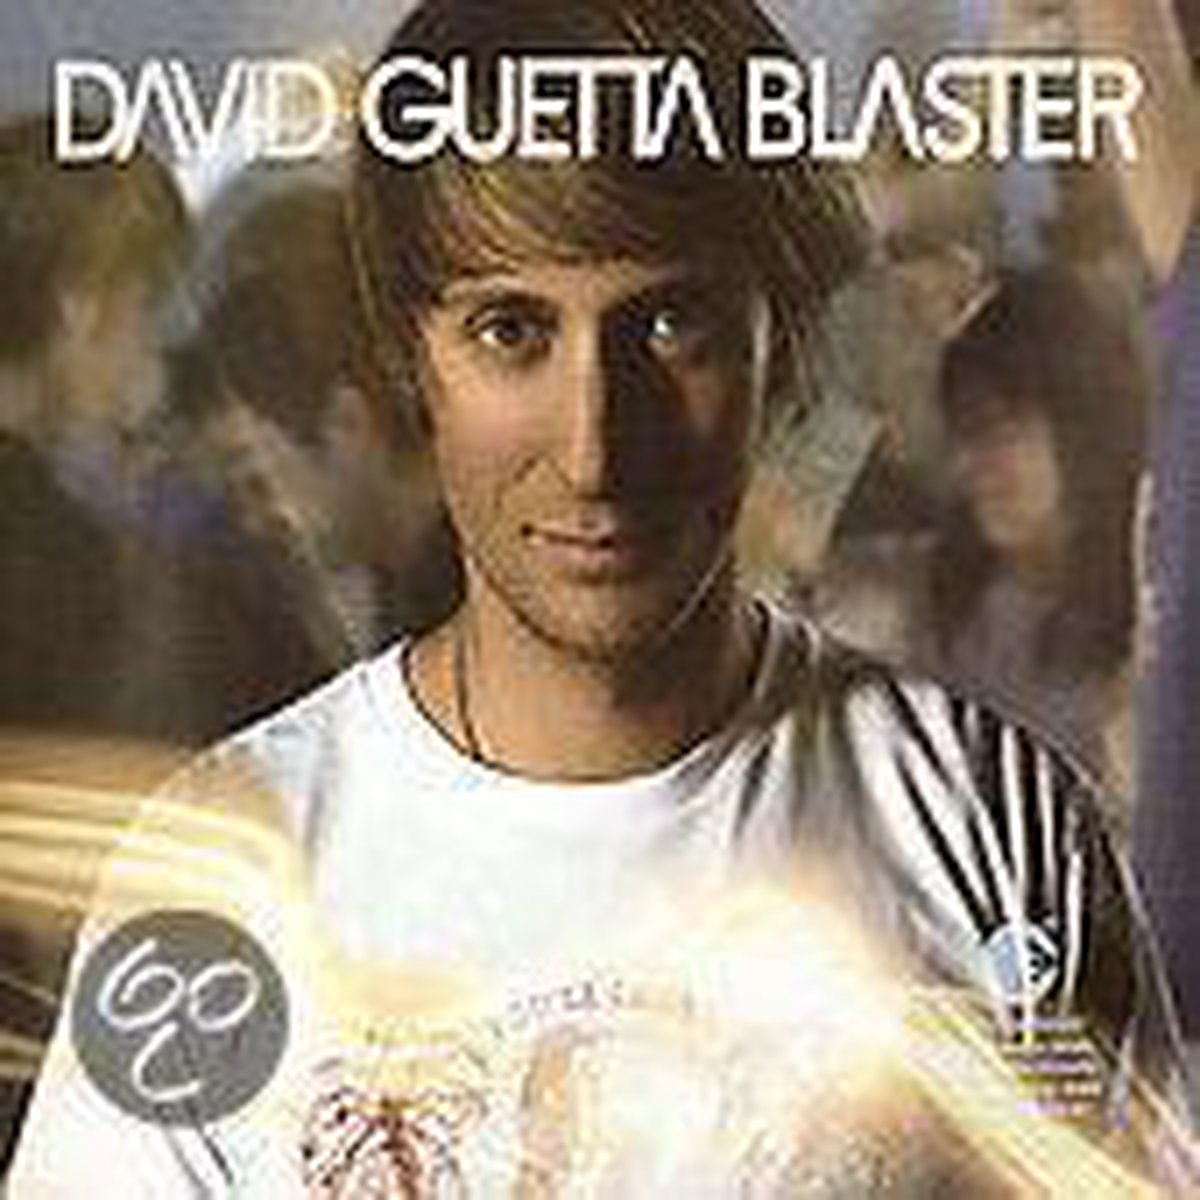 Blaster - David Guetta